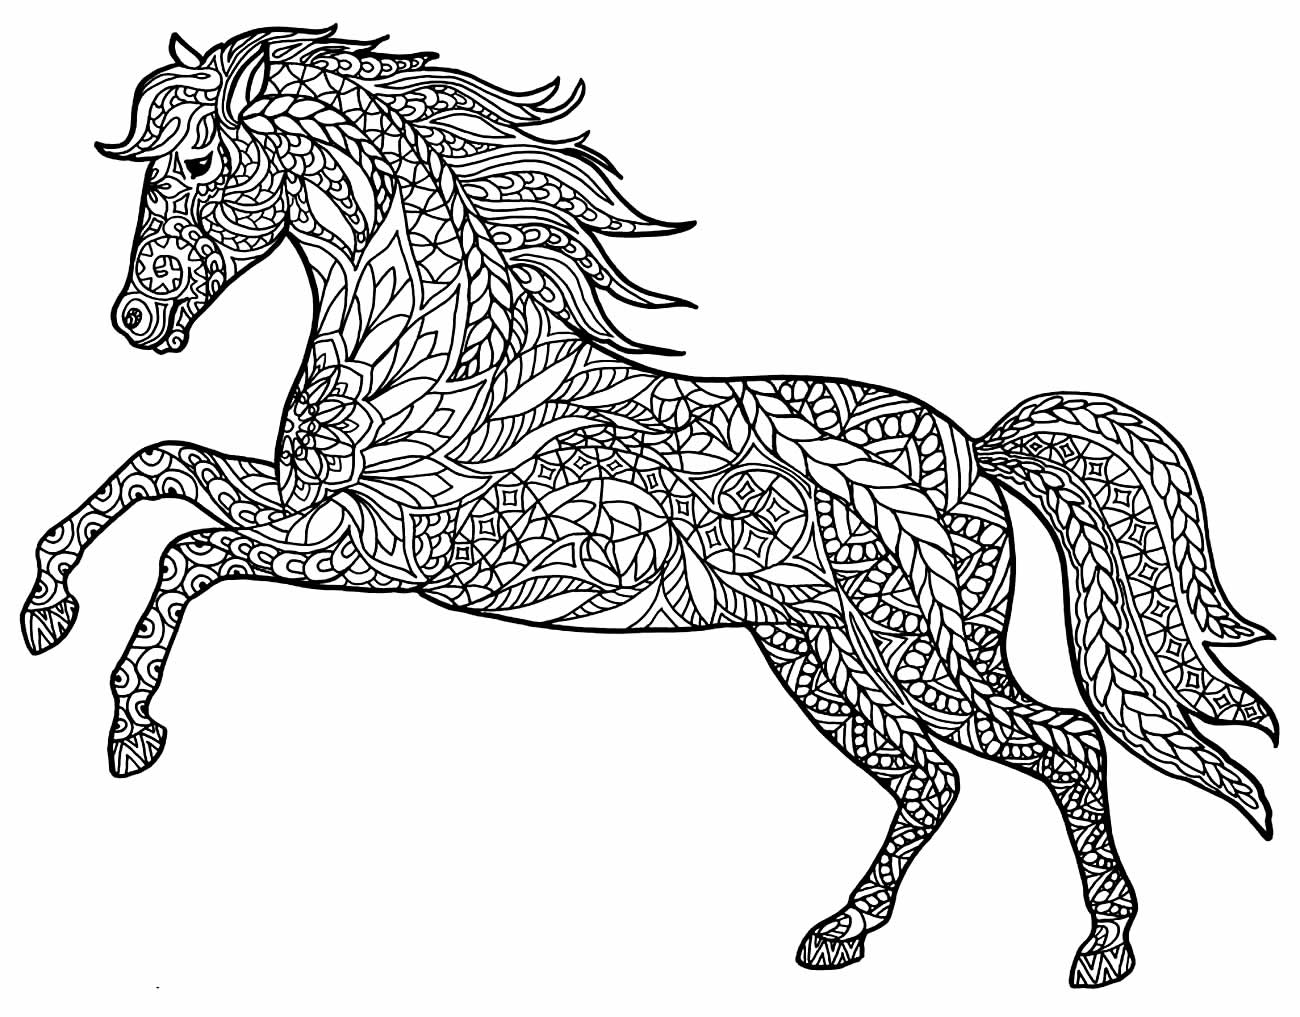 Imagem para colorir de cavalo